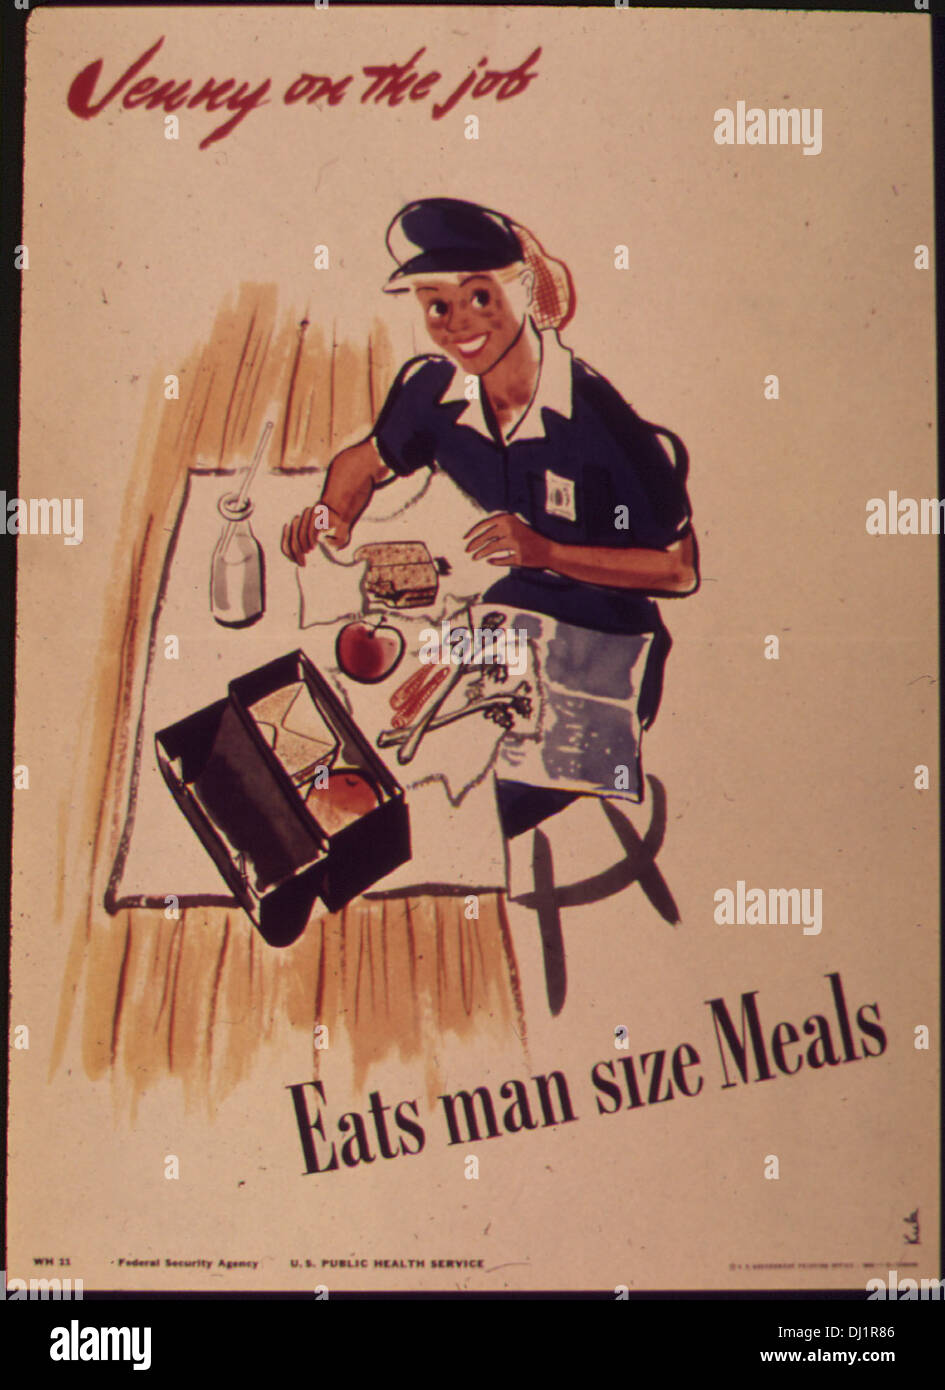 Jenny on the job - Eats man sized meals 683 Stock Photo